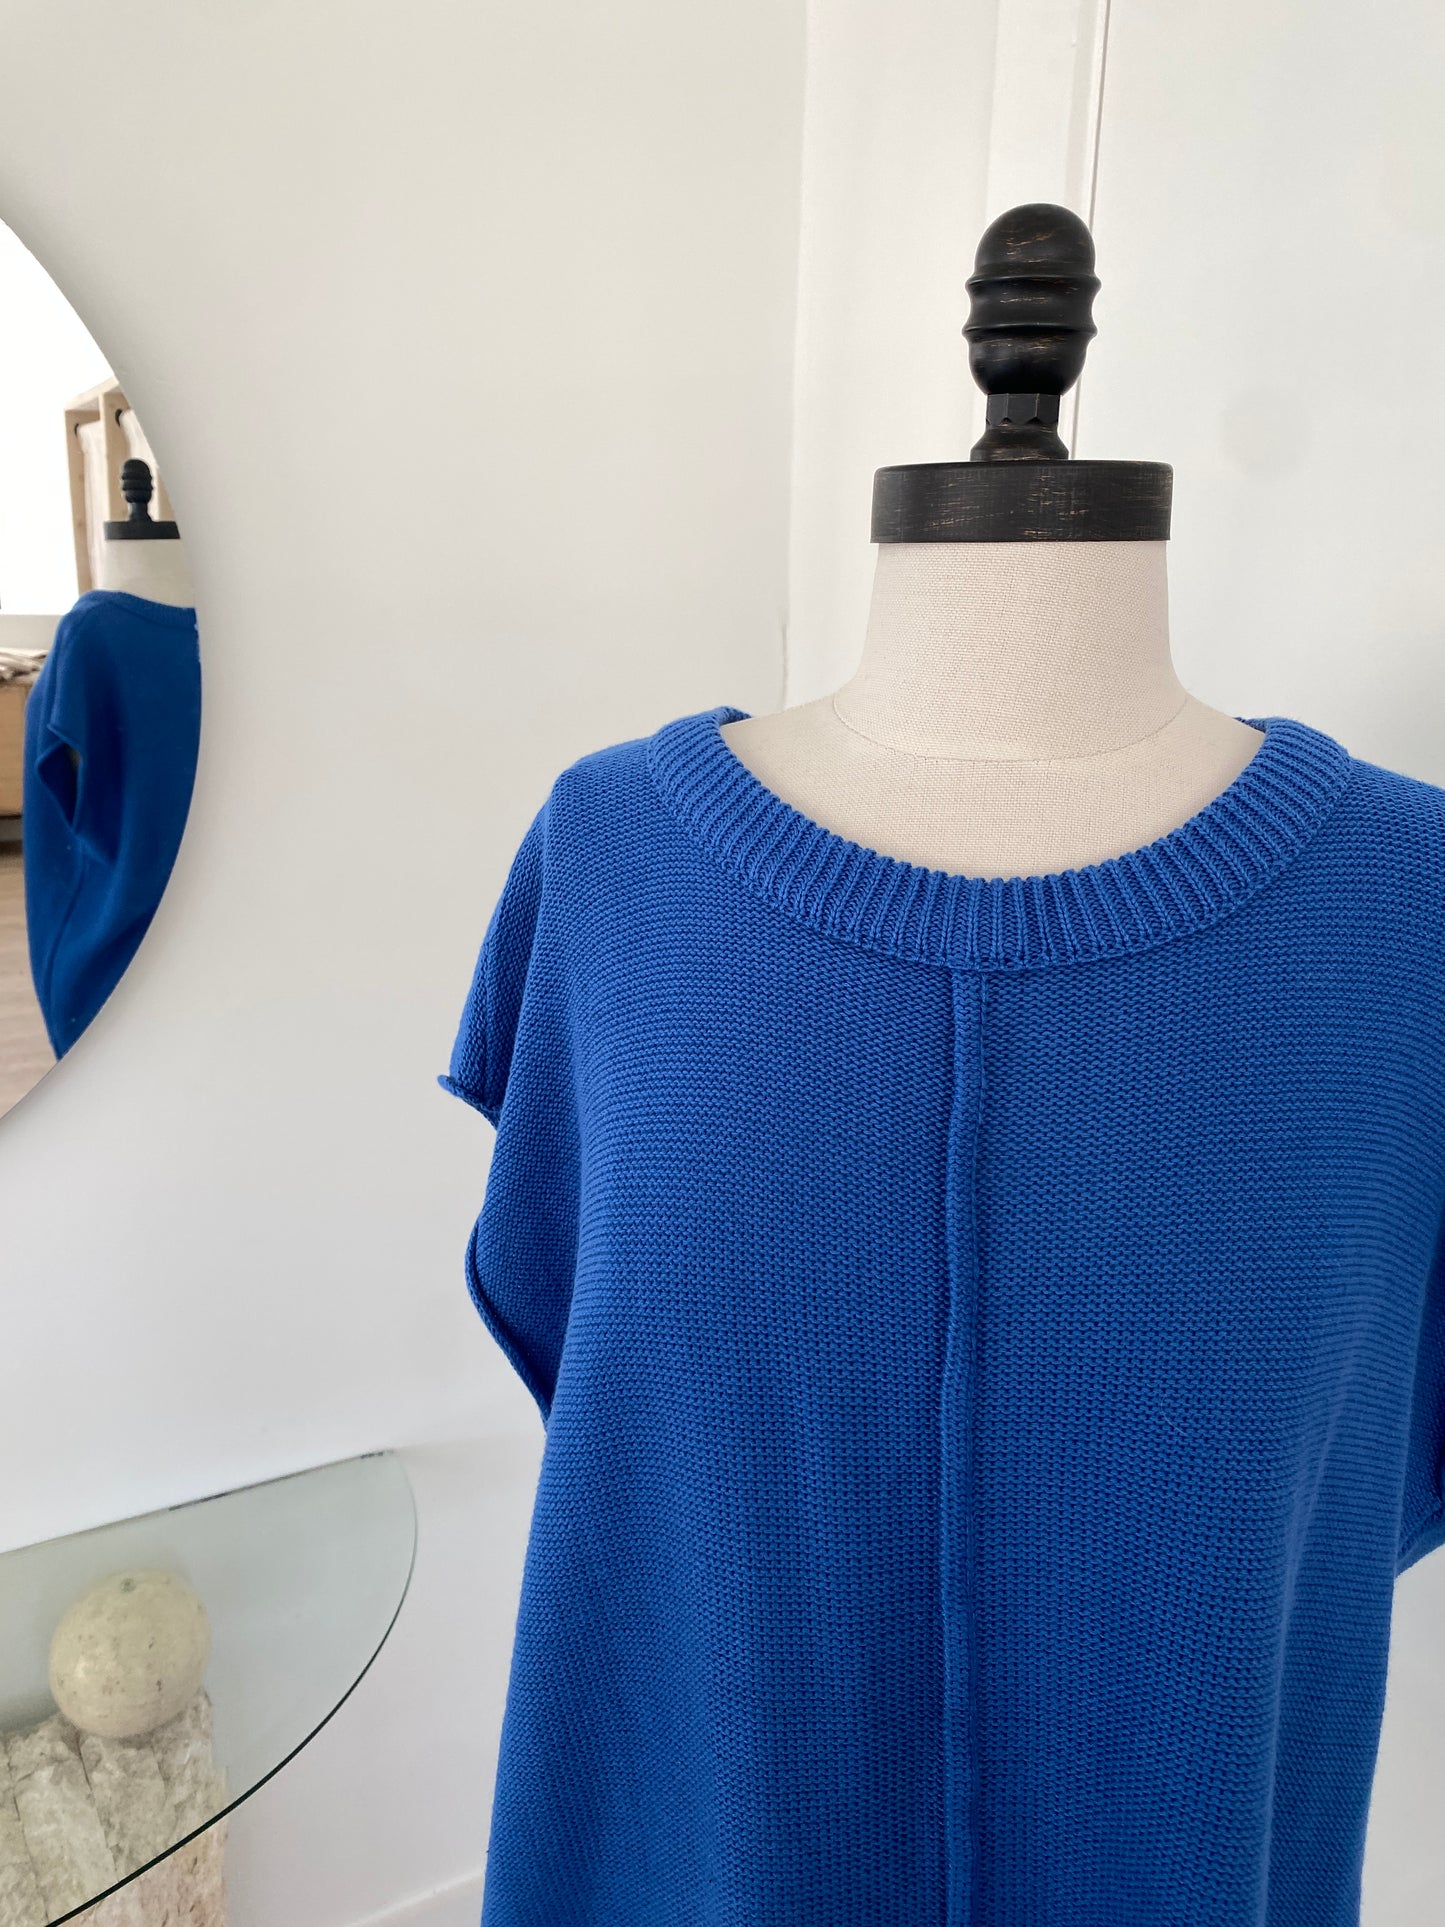 Cobalt Blue Knit Top